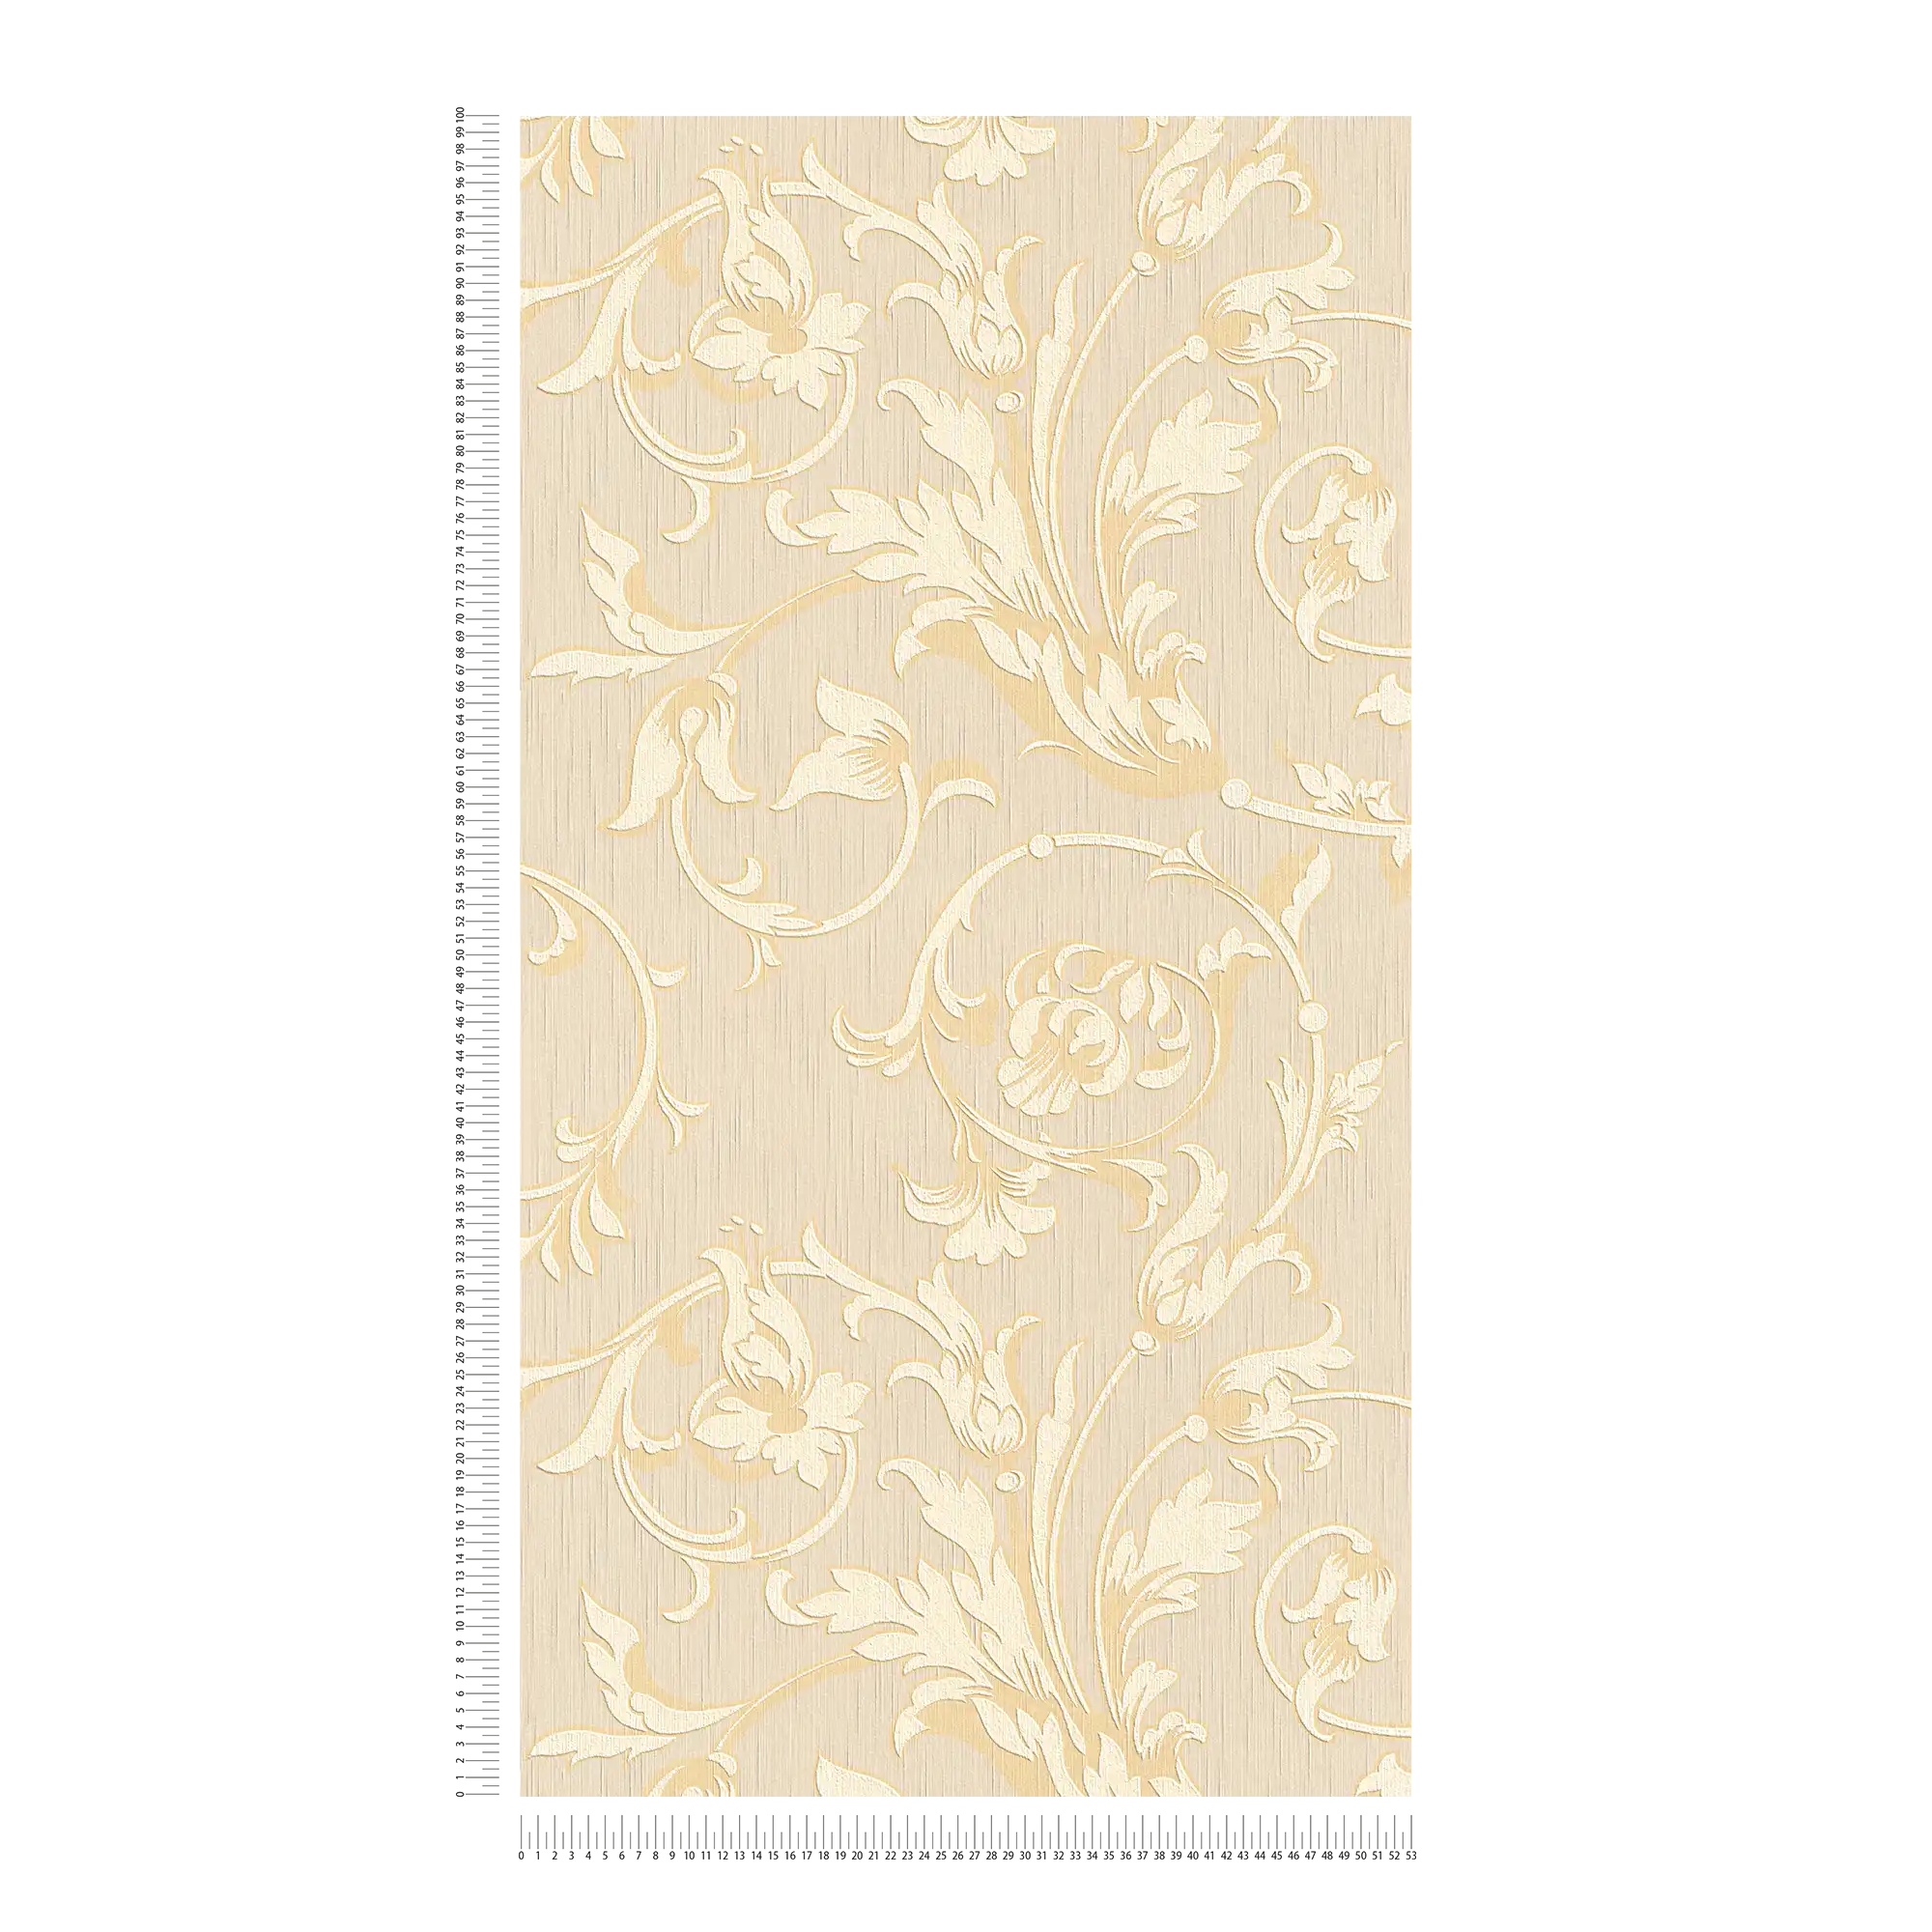             Ornamentbehang met zijdeglans - crème, goud, beige
        